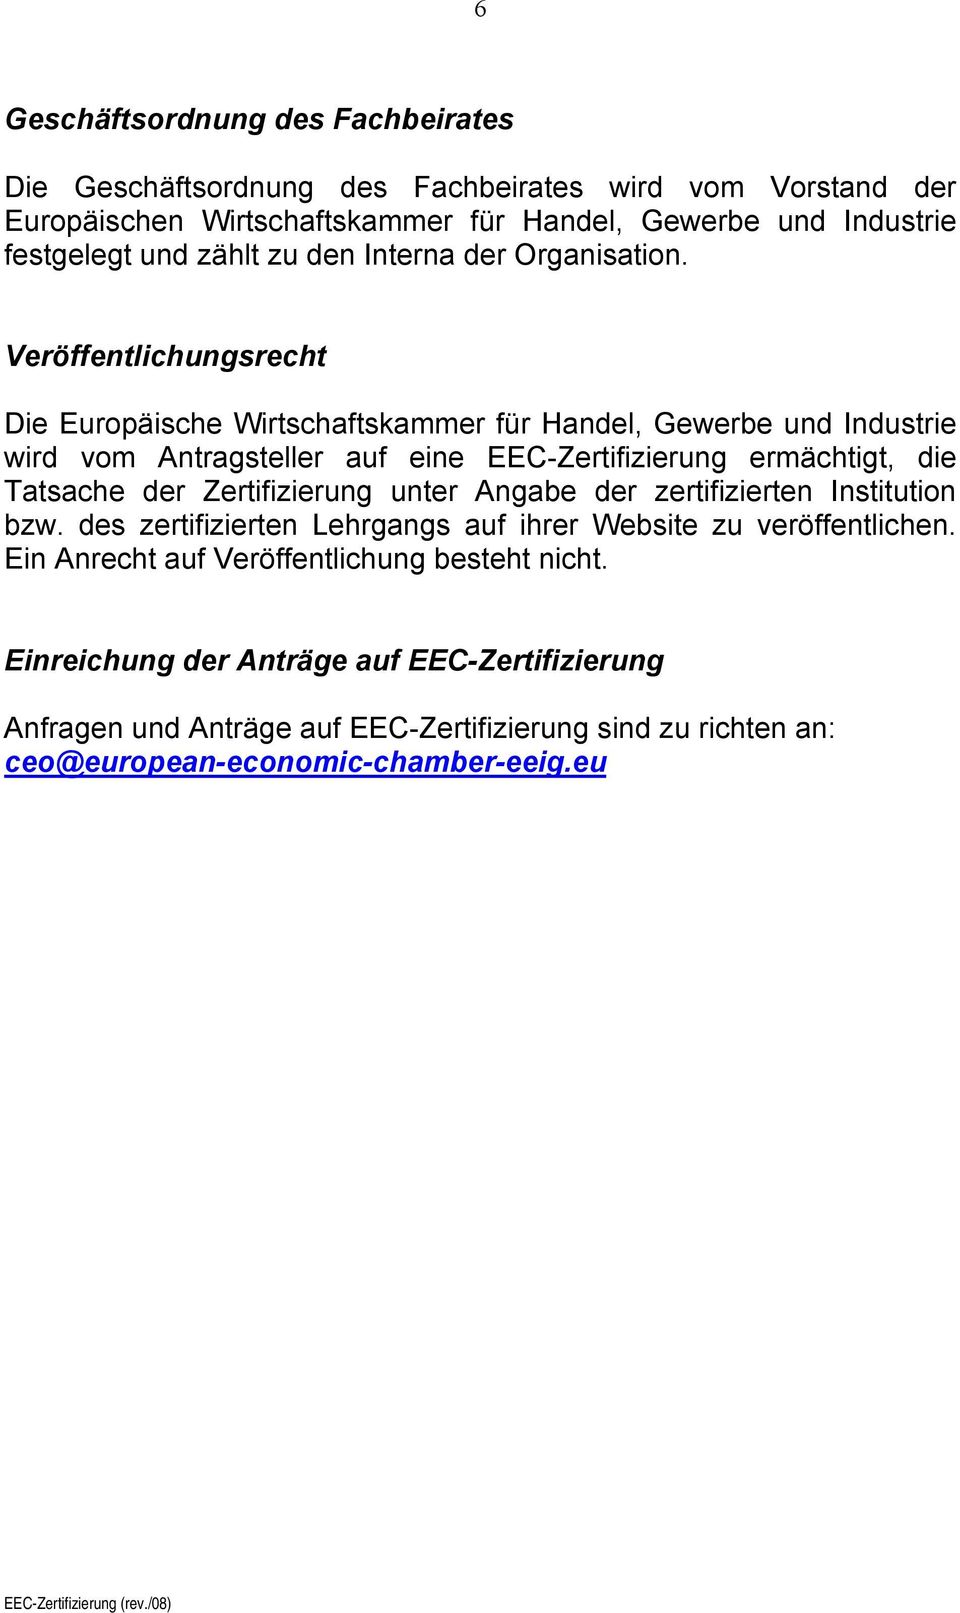 Veröffentlichungsrecht Die Europäische Wirtschaftskammer für Handel, Gewerbe und Industrie wird vom Antragsteller auf eine EEC-Zertifizierung ermächtigt, die Tatsache der